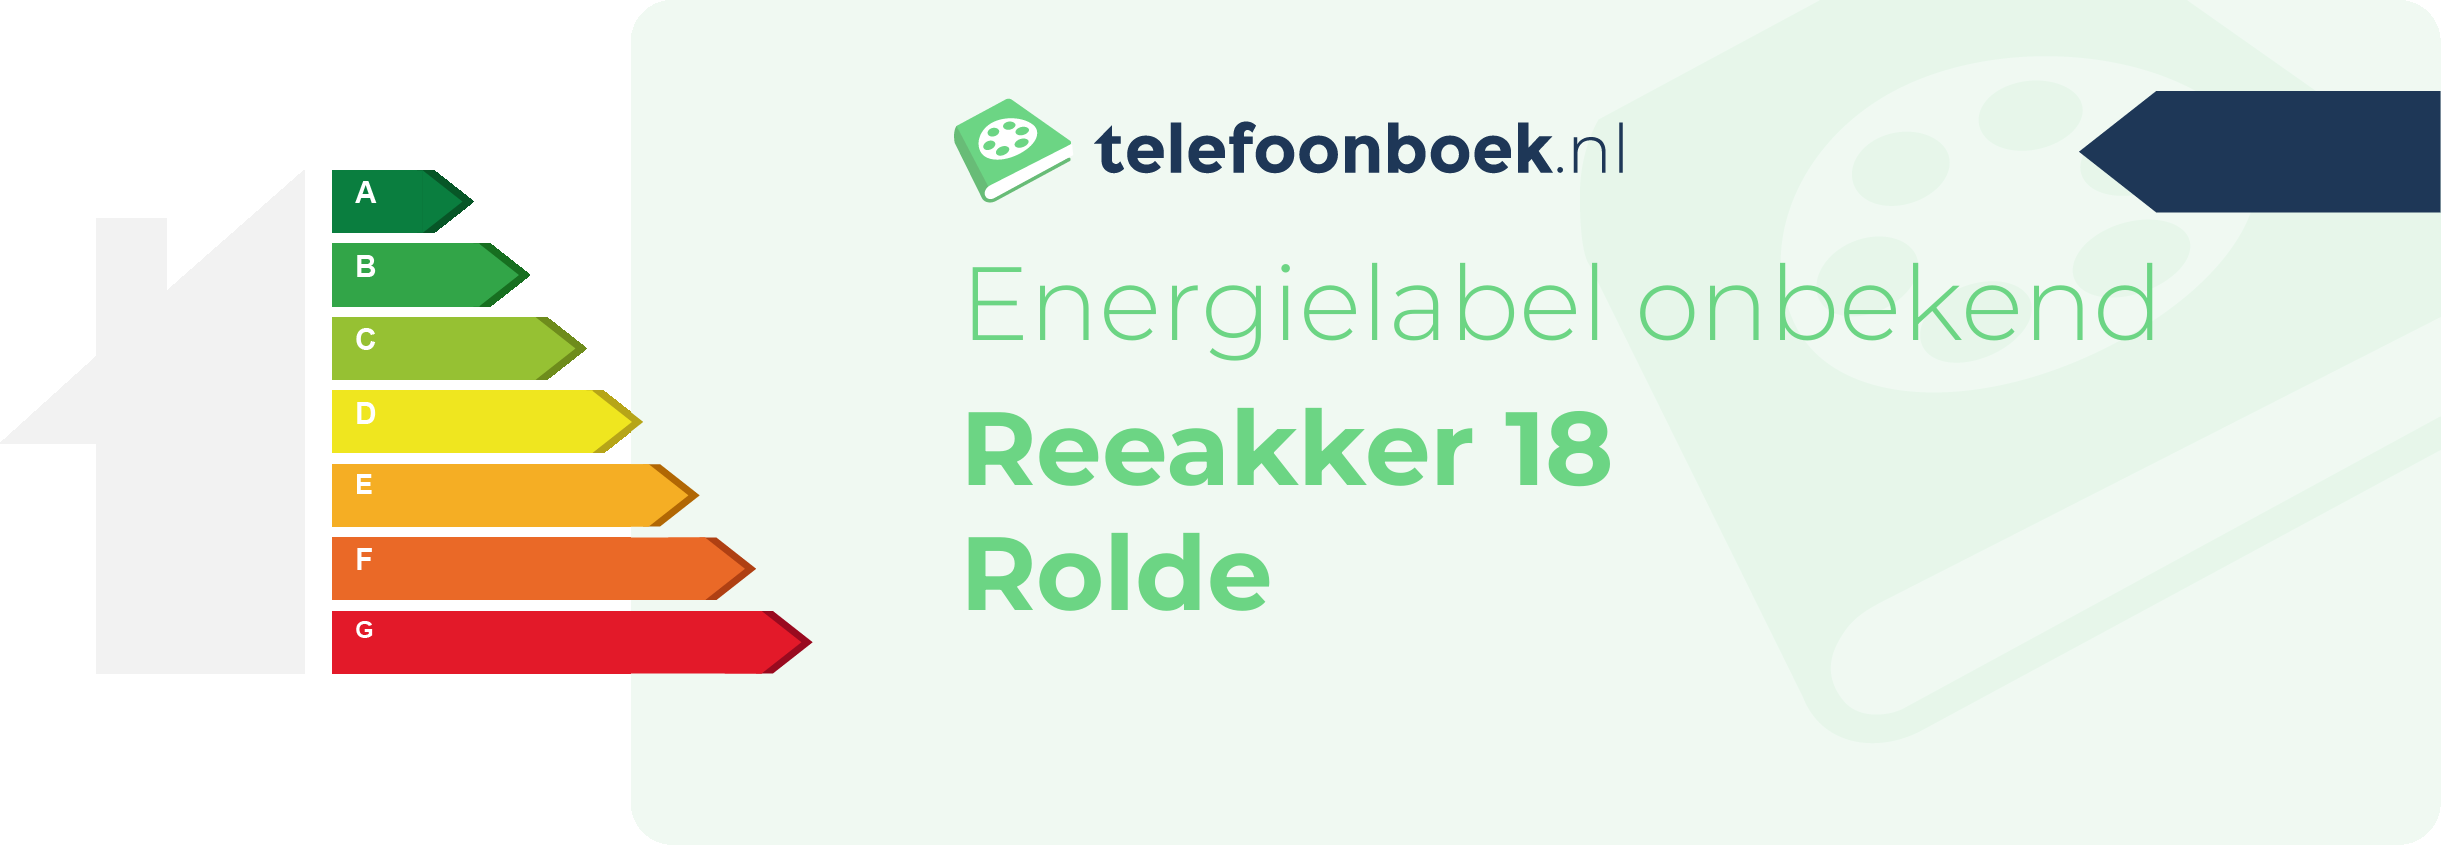 Energielabel Reeakker 18 Rolde